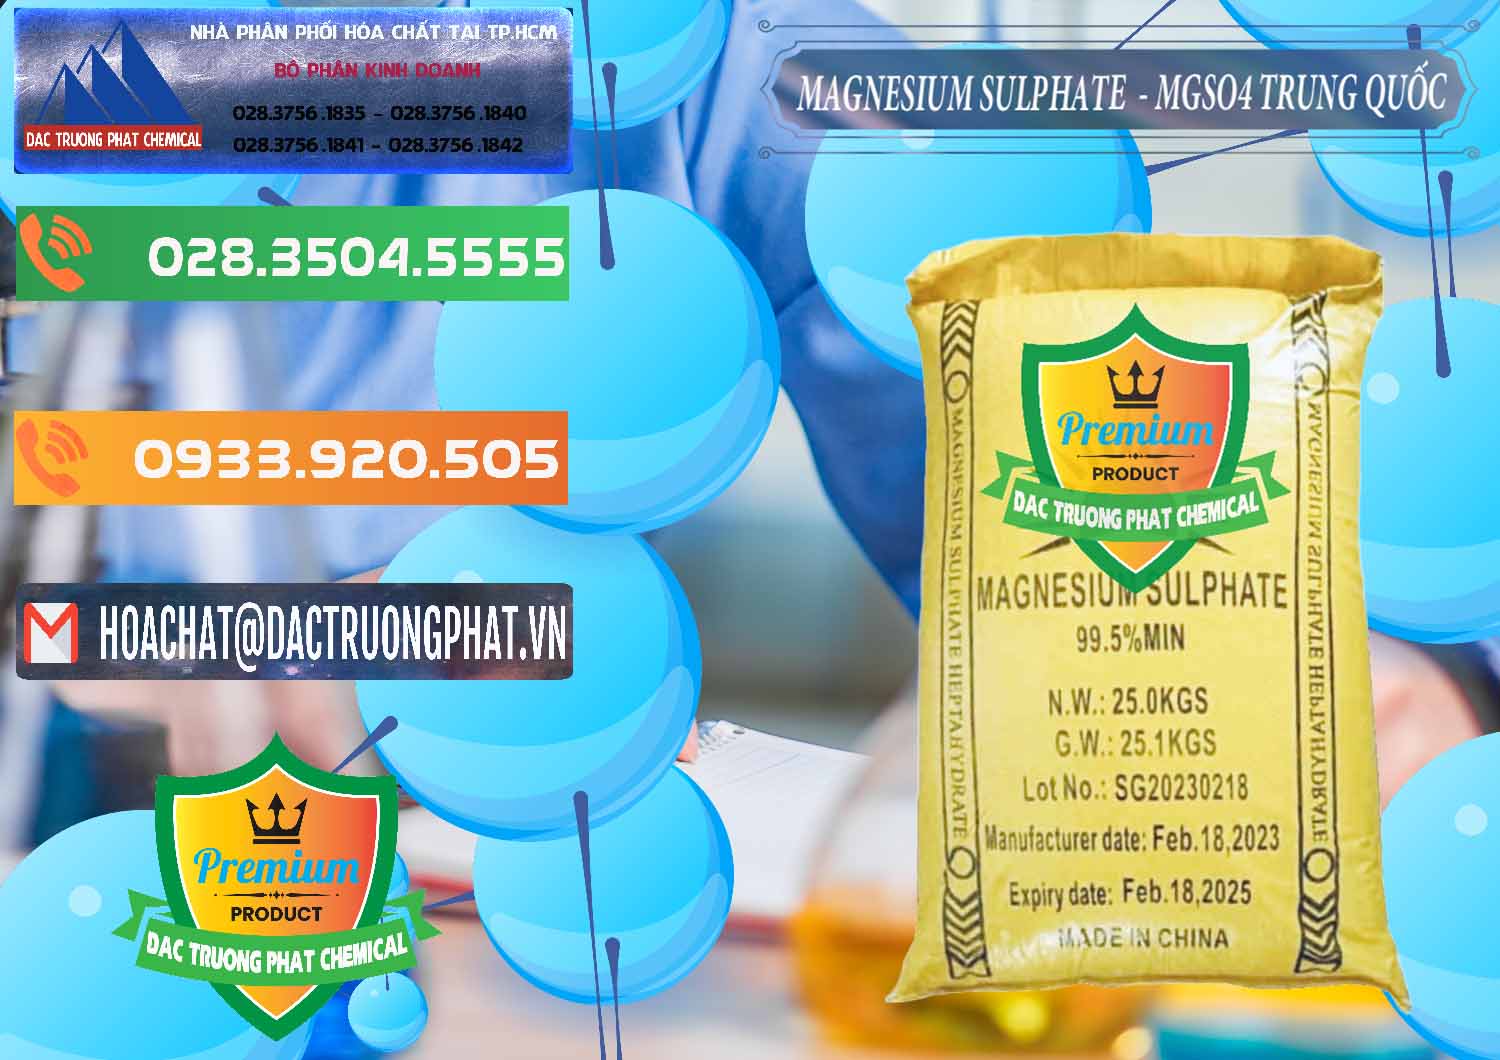 Cty chuyên cung cấp và bán MGSO4.7H2O – Magnesium Sulphate Heptahydrate Logo Mặt Trời Trung Quốc China - 0391 - Chuyên cung cấp và bán hóa chất tại TP.HCM - hoachatxulynuoc.com.vn